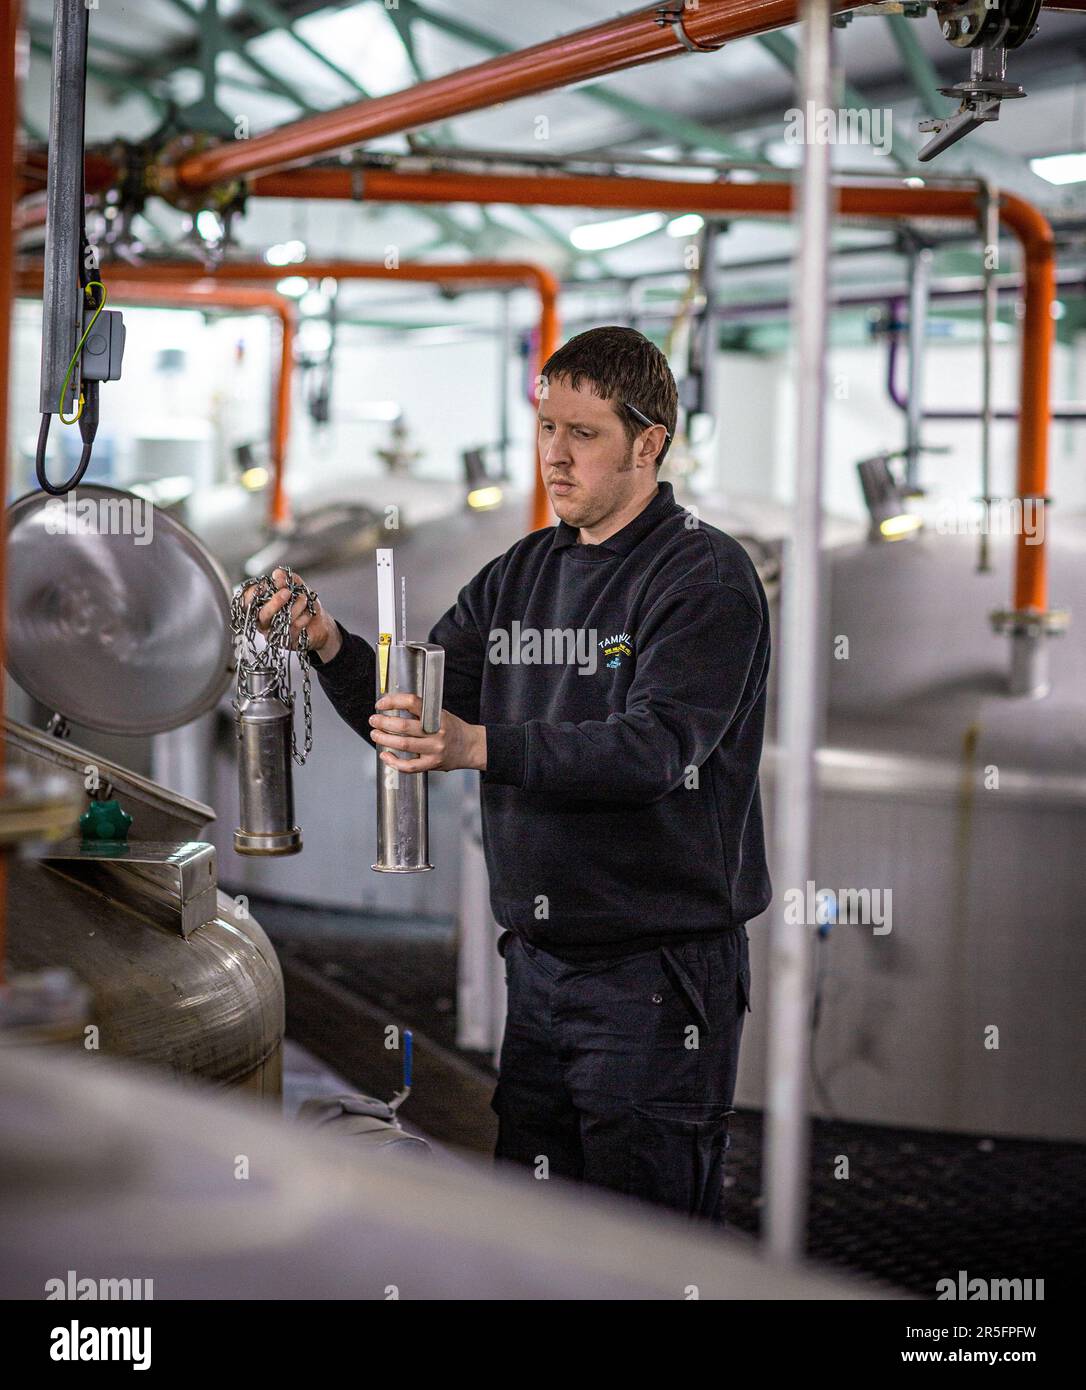 Ein Brennerarbeiter, der den Fermentationsprozess in der Whisky-Destillerie Tamnavulin, Ballindalloch, Banffshire, Schottland, überprüft, Stockfoto